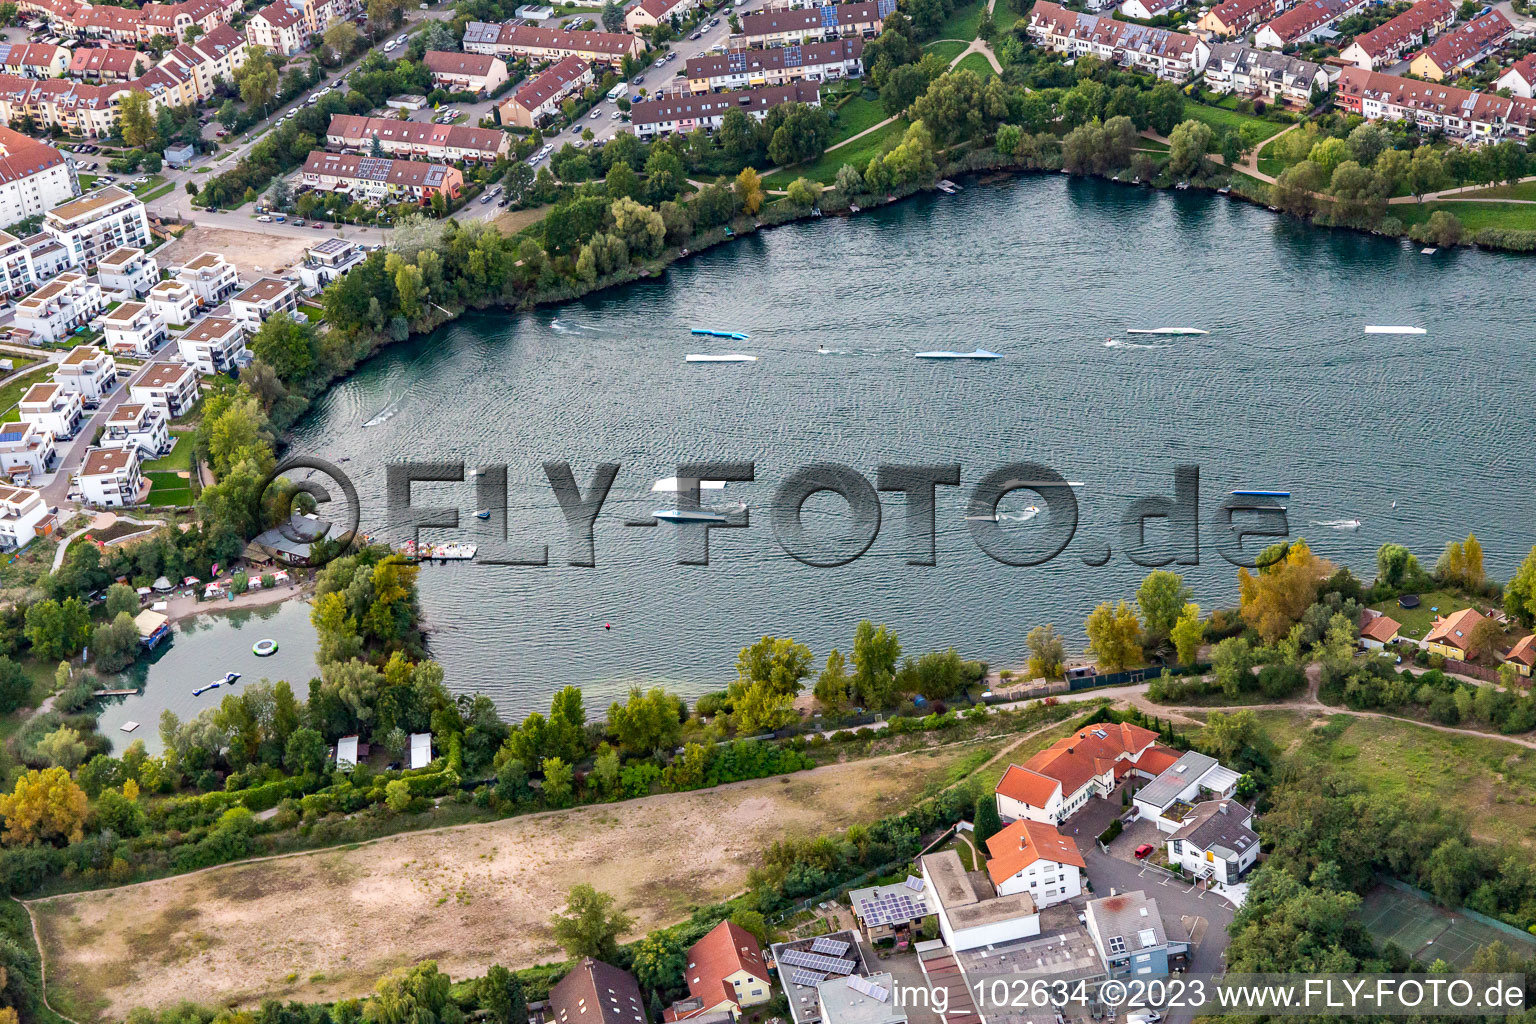 Vue aérienne de Installations de ski nautique et de wakeboard sur le lac Rheinau à le quartier Rheinau in Mannheim dans le département Bade-Wurtemberg, Allemagne